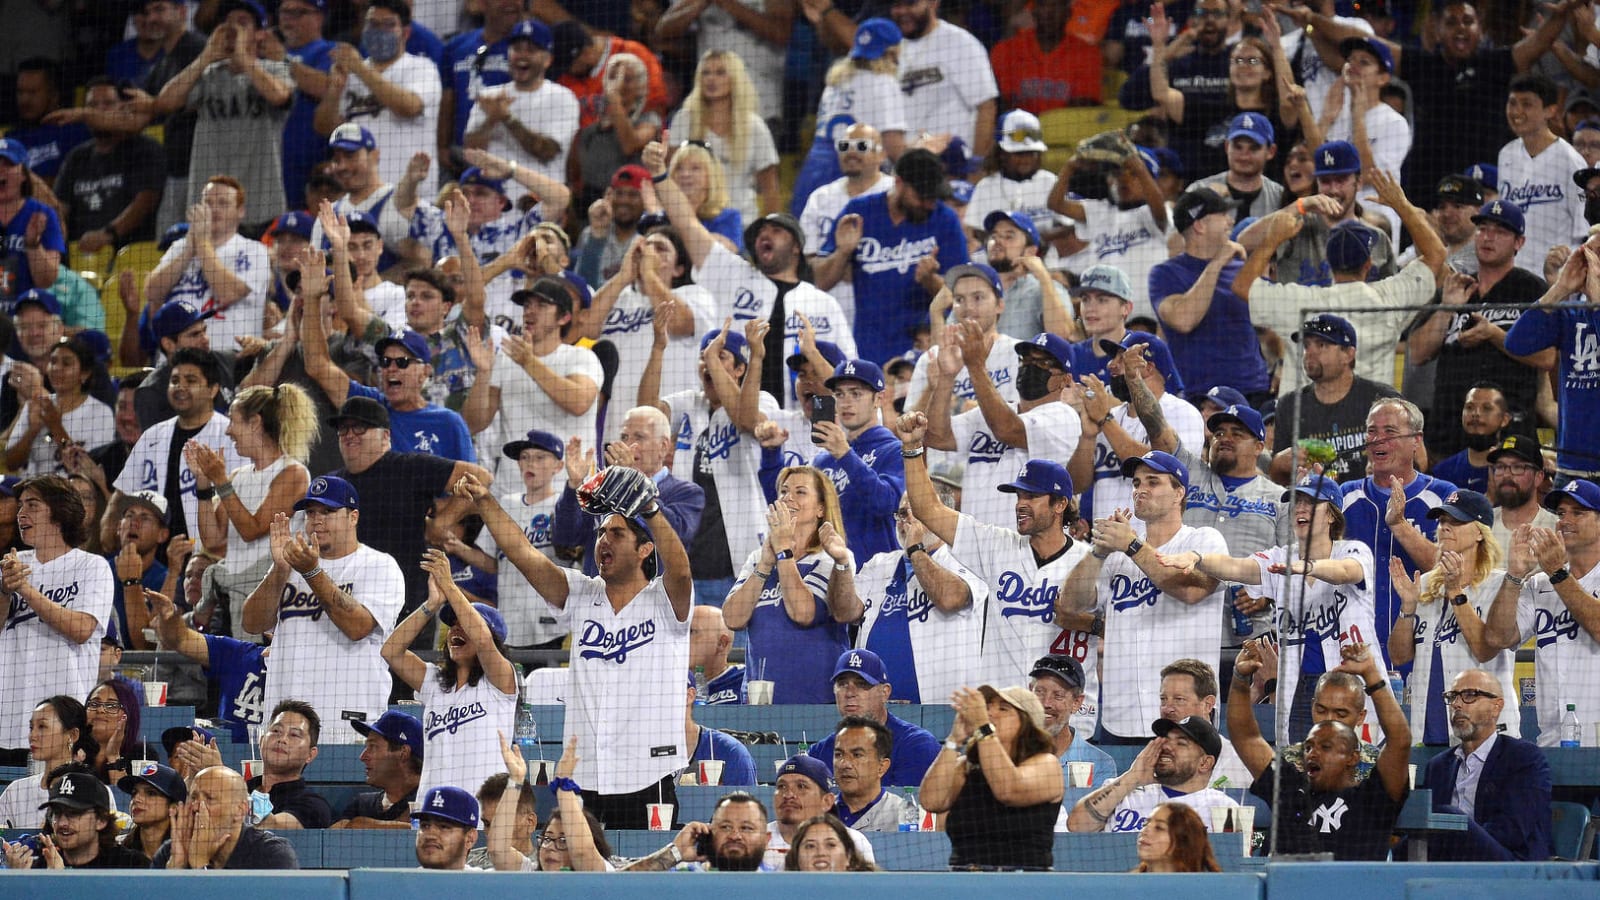 Dodgers fan headbutts Astros fan during fight